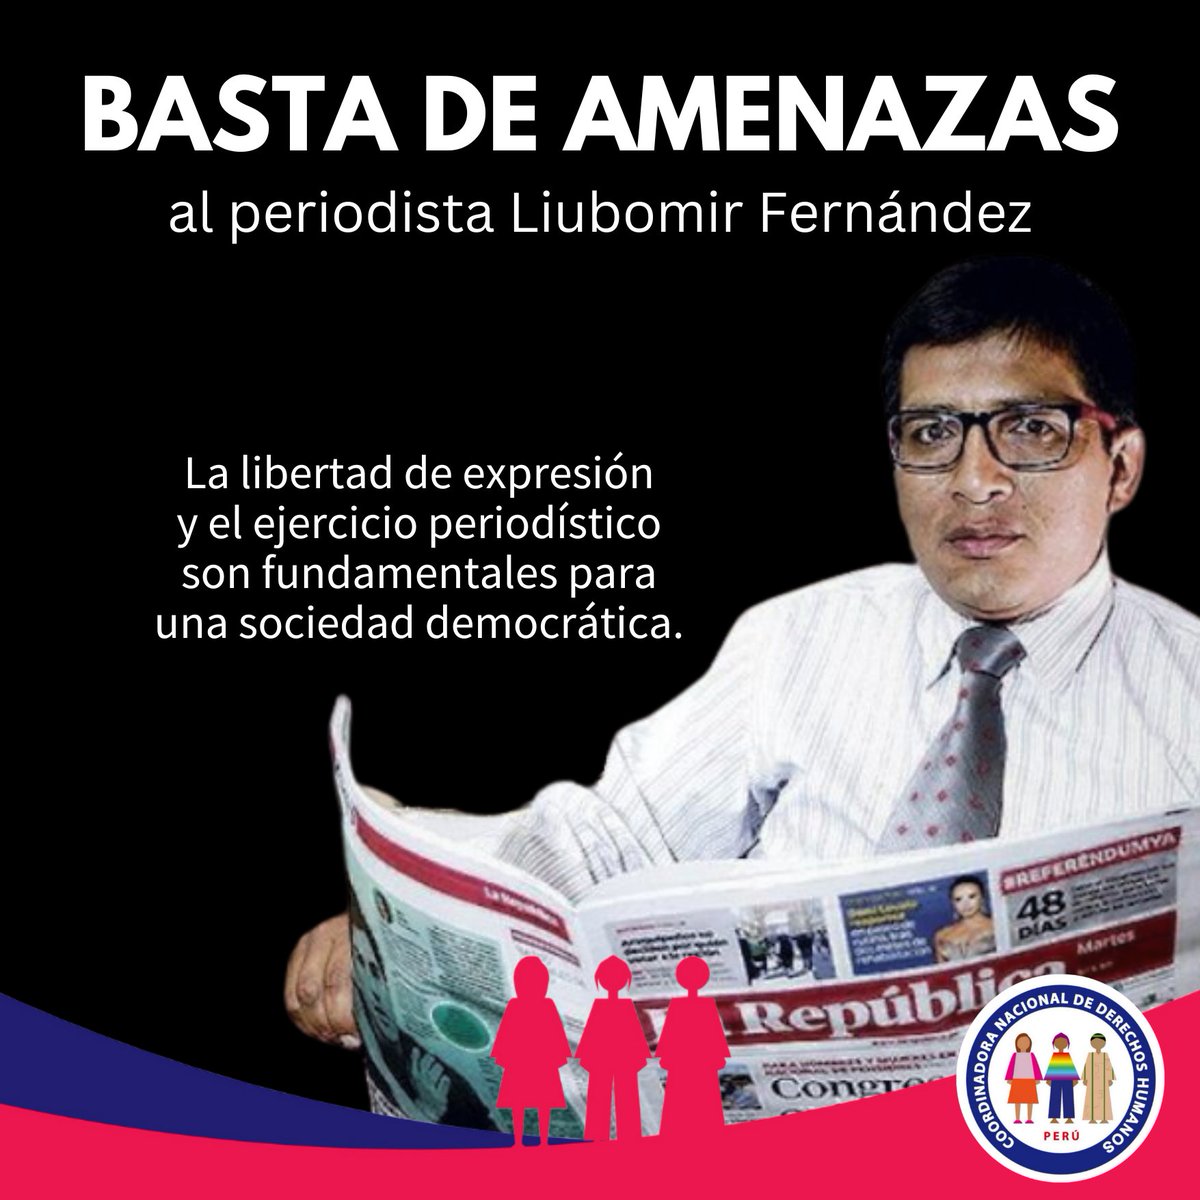 🔴¡Basta de amenazas al periodista Liubomir Fernández! 👉🏾Desde la CNDDHH expresamos nuestro firme rechazo ante las amenazas que está sufriendo el periodista Liubomir Fernández en Puno, por ejercer su labor de prensa. 📣La libertad de expresión y el ejercicio periodístico son…